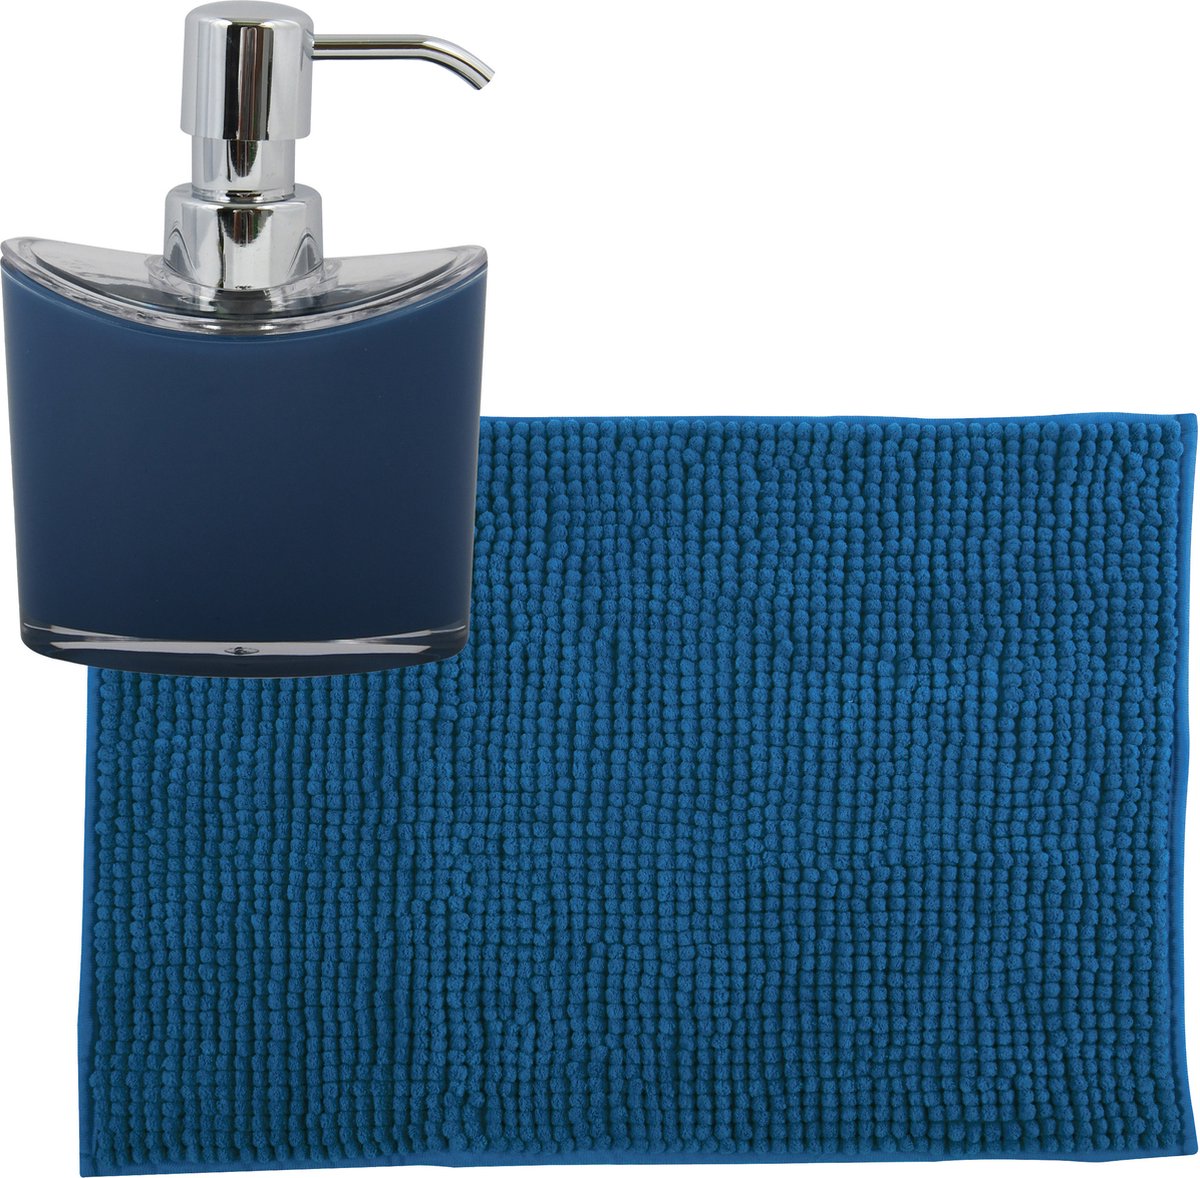 MSV badkamer droogloop mat tapijtje 40 x 60 cm en zelfde kleur zeeppompje 260 ml blauw